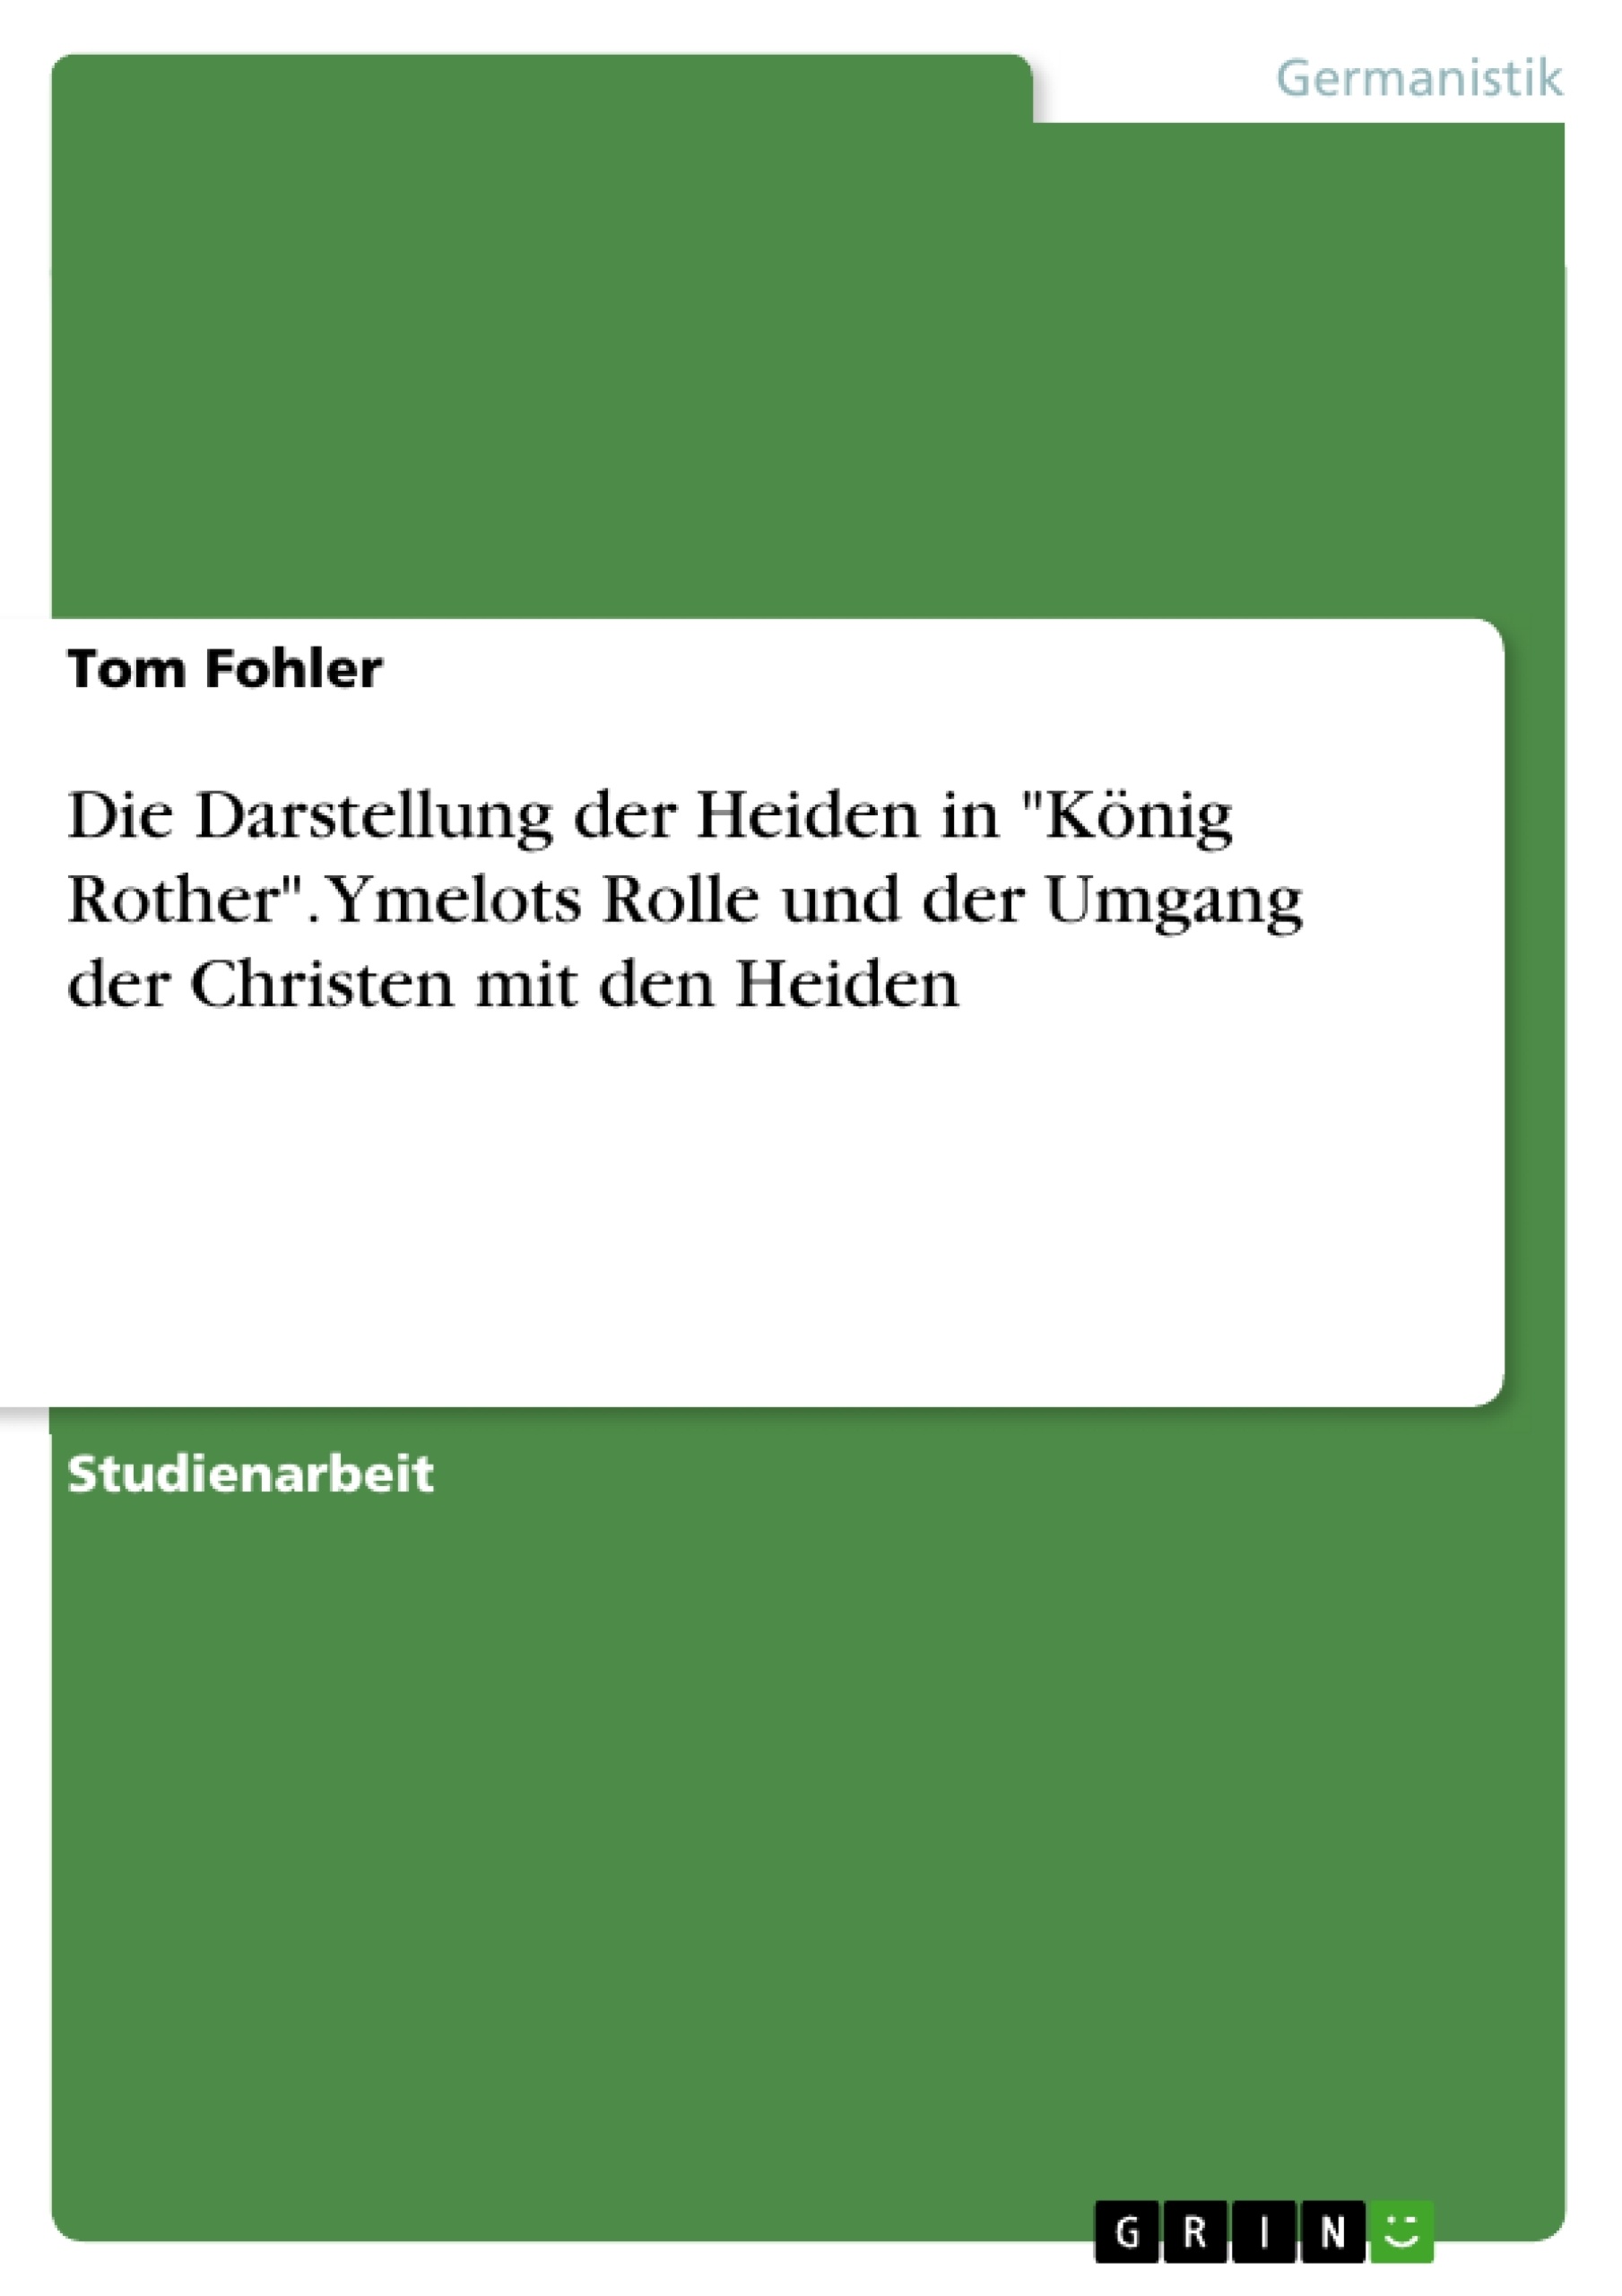 Title: Die Darstellung der Heiden in "König Rother". Ymelots Rolle und der Umgang der Christen mit den Heiden